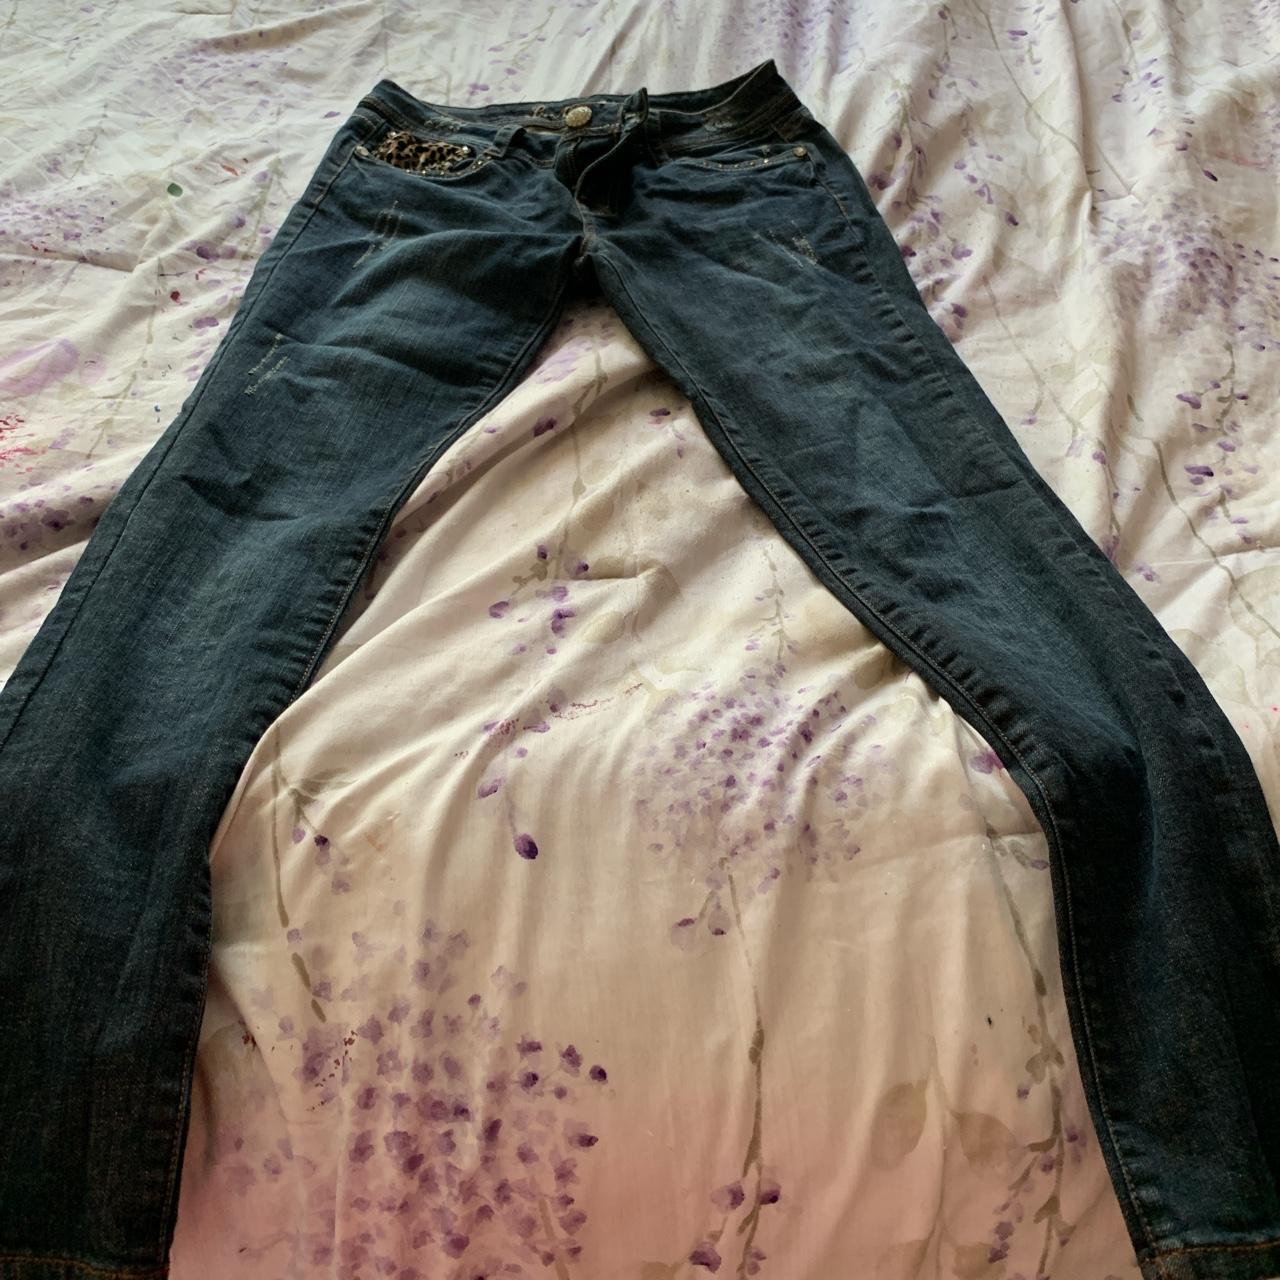 L.A idol U.S.A cheetah print jeans 👖 size 11 #jeans - Depop